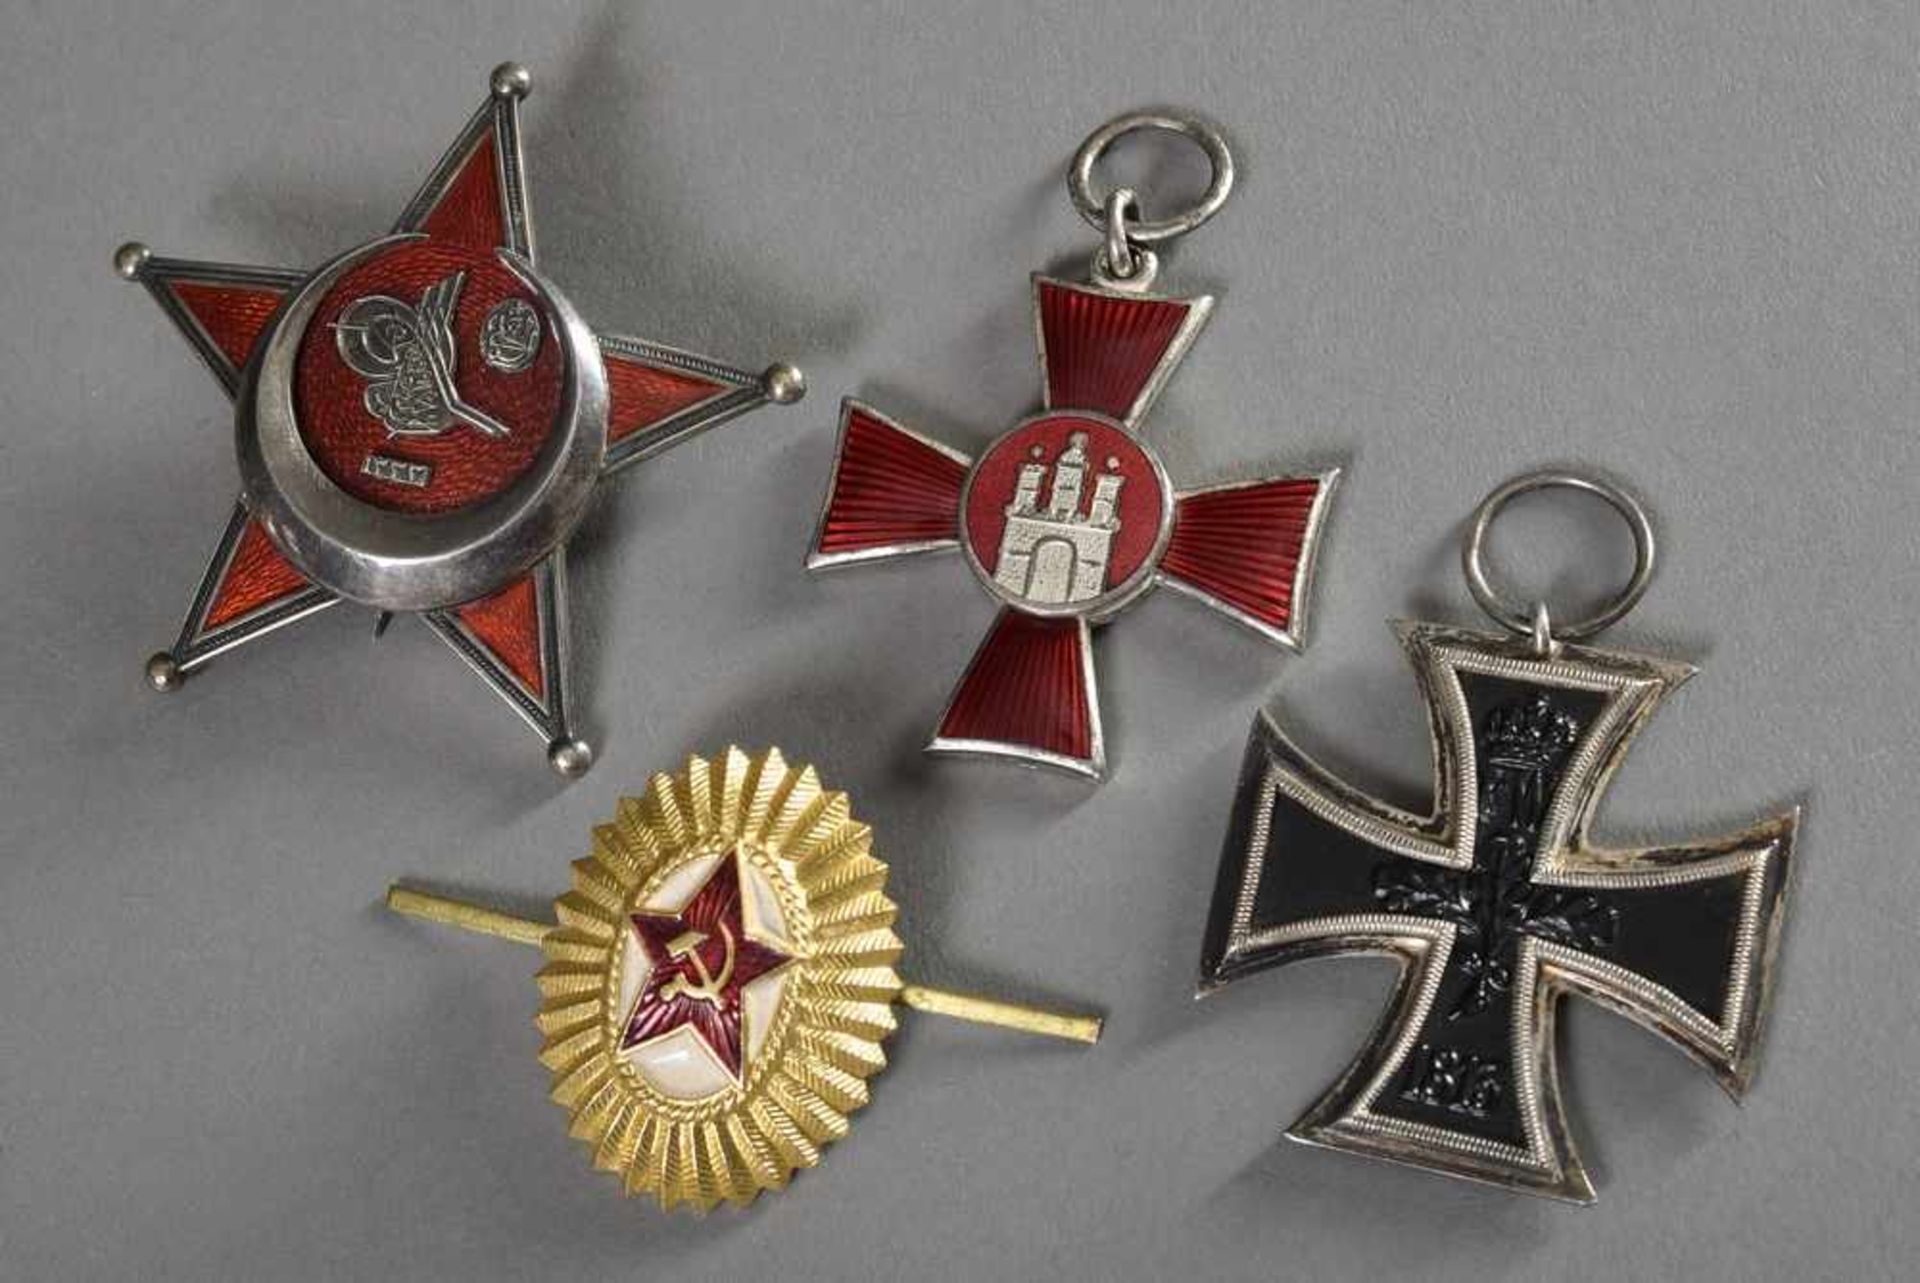 4 Diverse Orden: Eisernes Kreuz 2. Klasse, Herst.: "RW", Silber/Eisen, 4,1x4,1cm, Eiserner